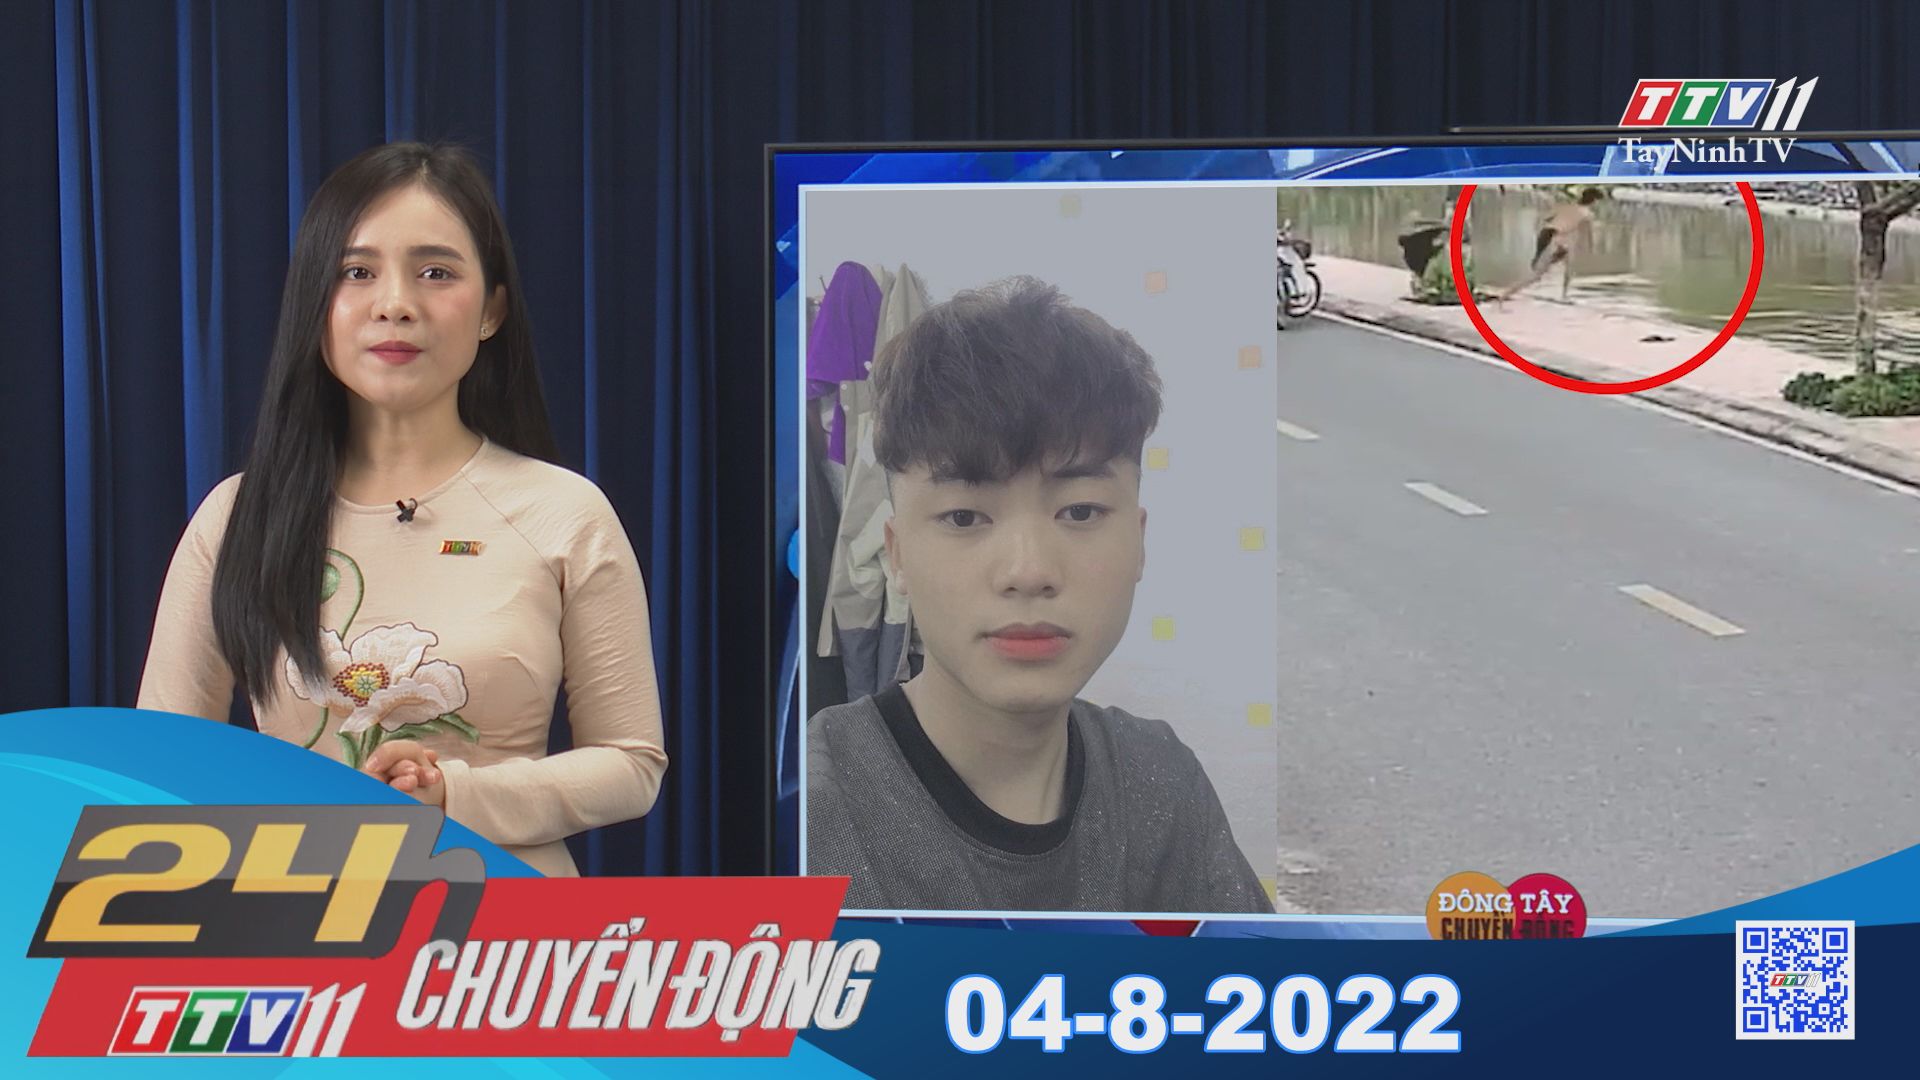 24h Chuyển động 04-8-2022 | Tin tức hôm nay | TayNinhTV